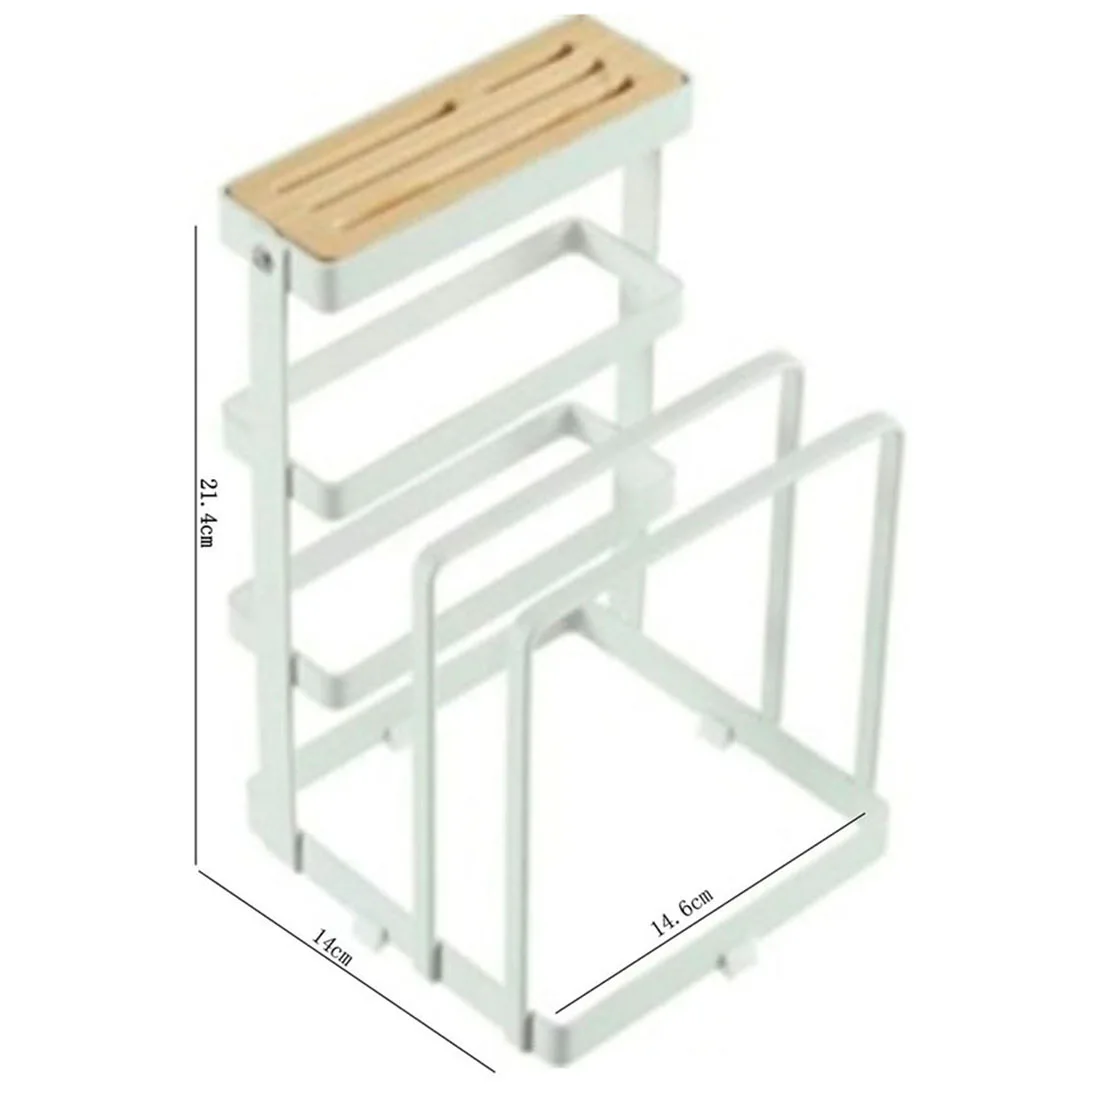 Креативный стеллаж для хранения разделочный блок держатель для ножей разделочная доска подставка органайзер для кухни-белый